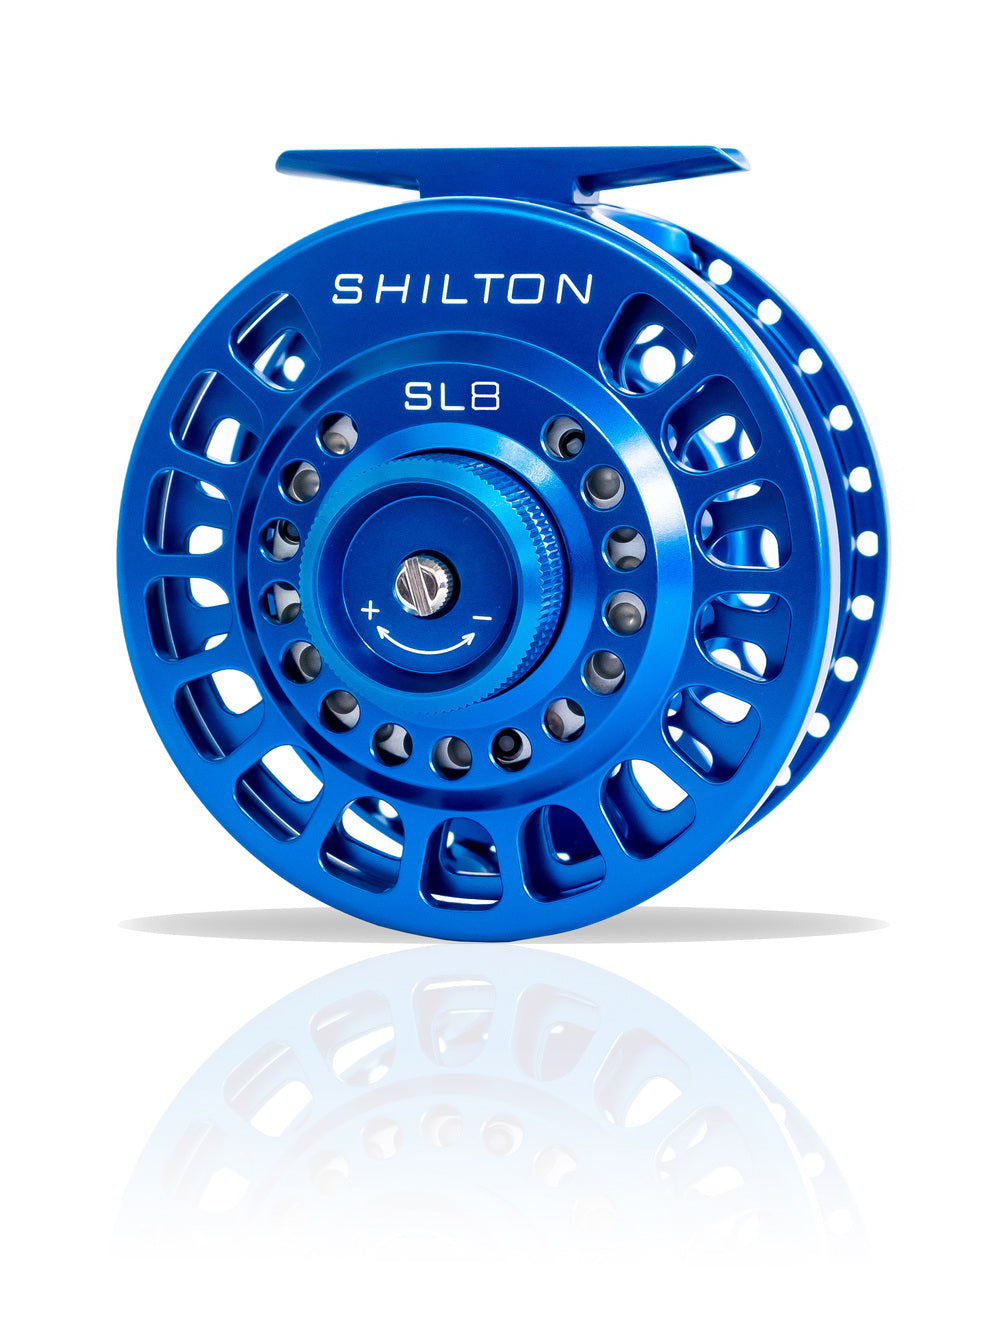 Shilton SL Reel Review - SL5, SL6, SL7, SL8, SL12, SL14 & New Names fo